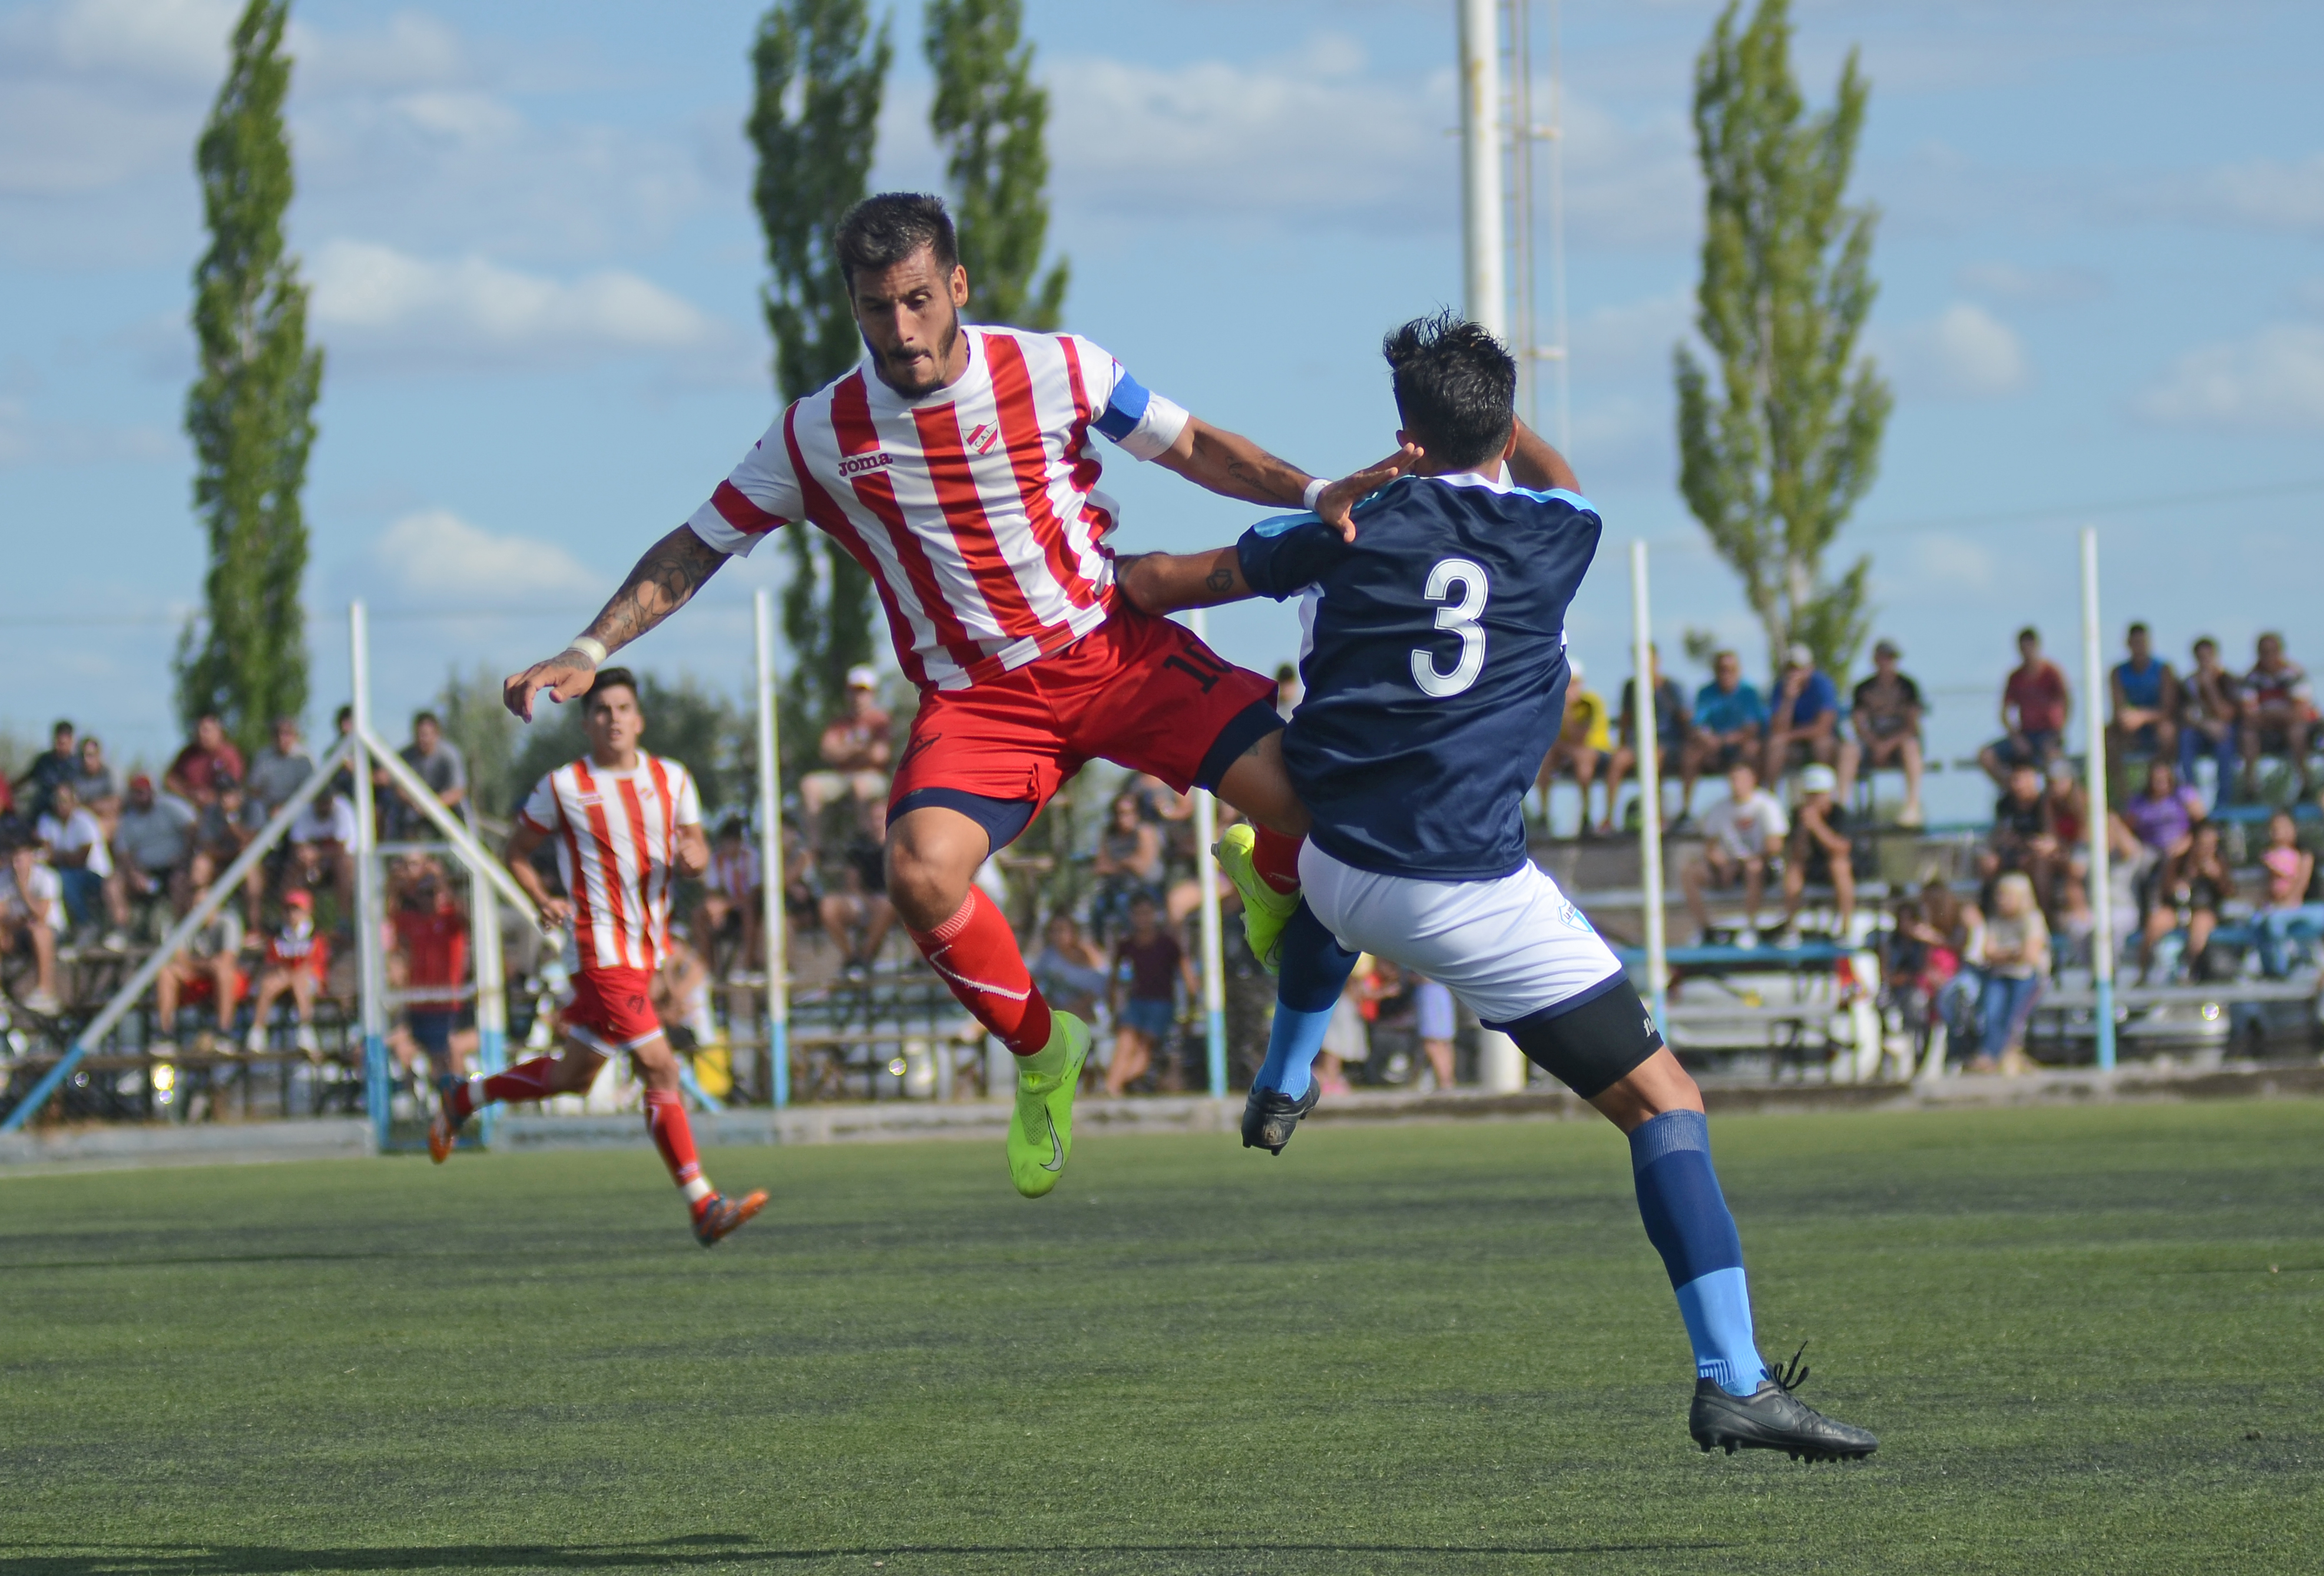 El juego brusco caracterizó el último partido entre ambos. (Foto: Mauro Pérez)